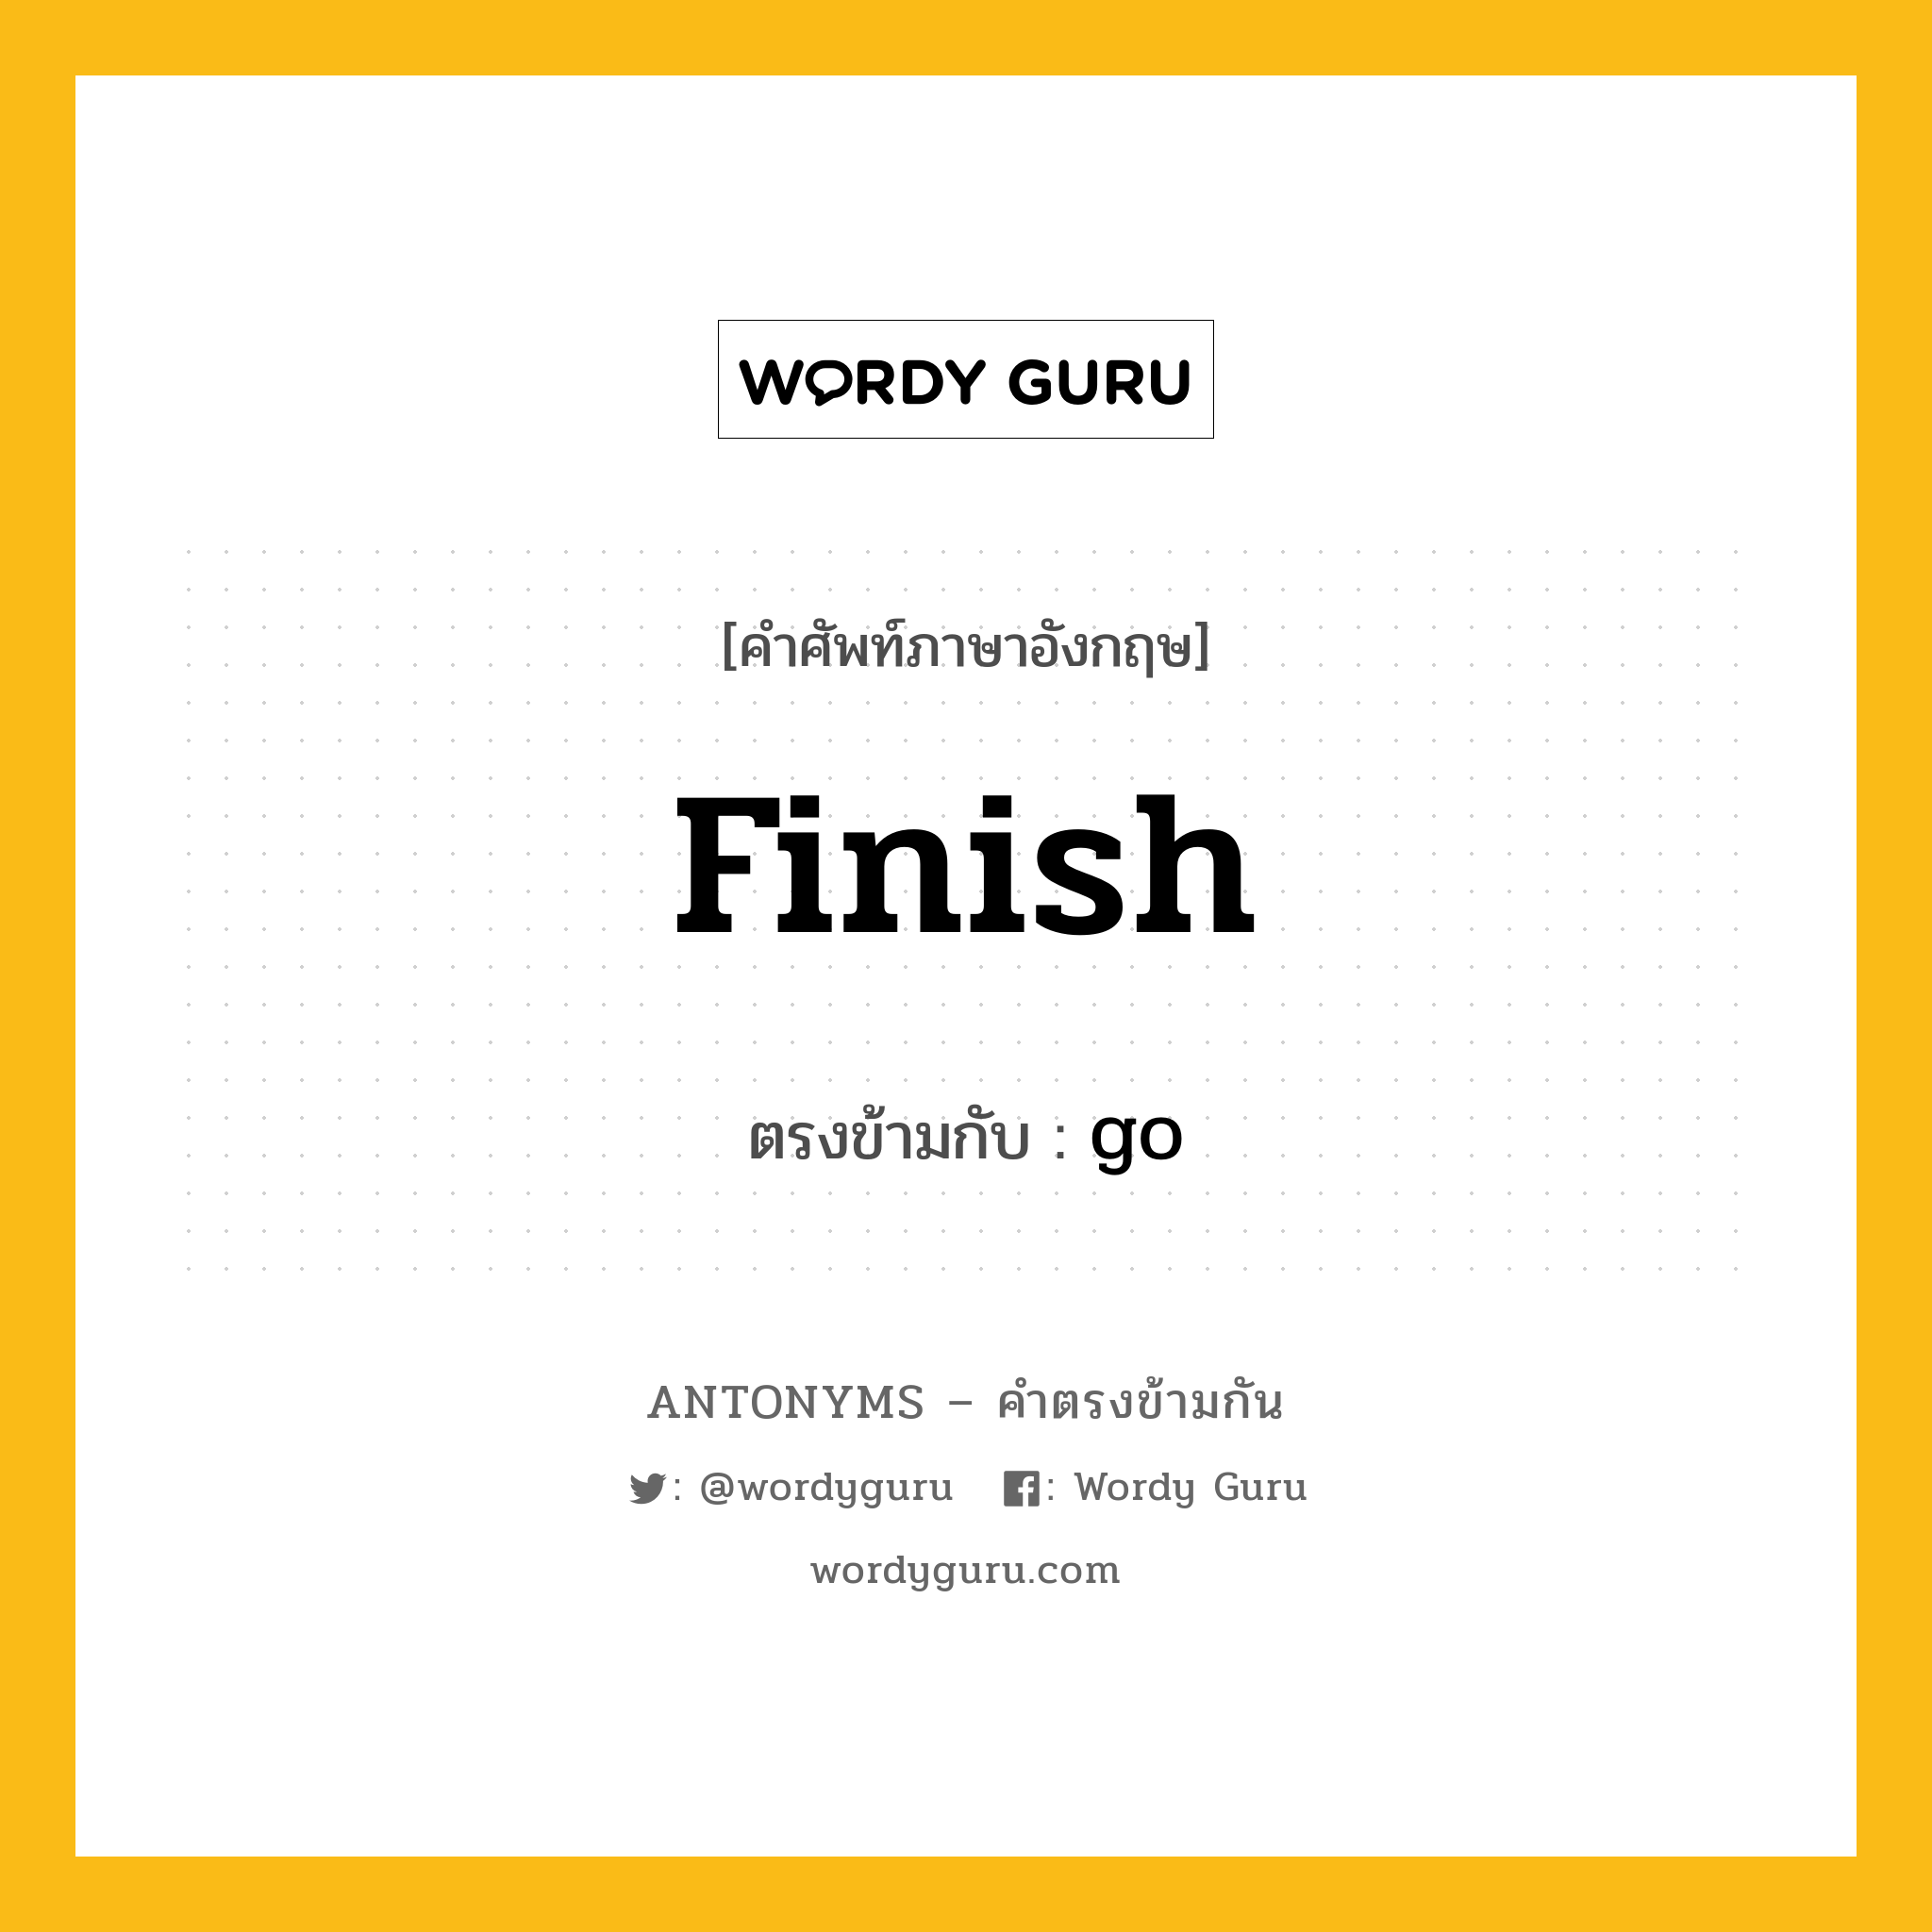 finish เป็นคำตรงข้ามกับคำไหนบ้าง?, คำศัพท์ภาษาอังกฤษ finish ตรงข้ามกับ go หมวด go